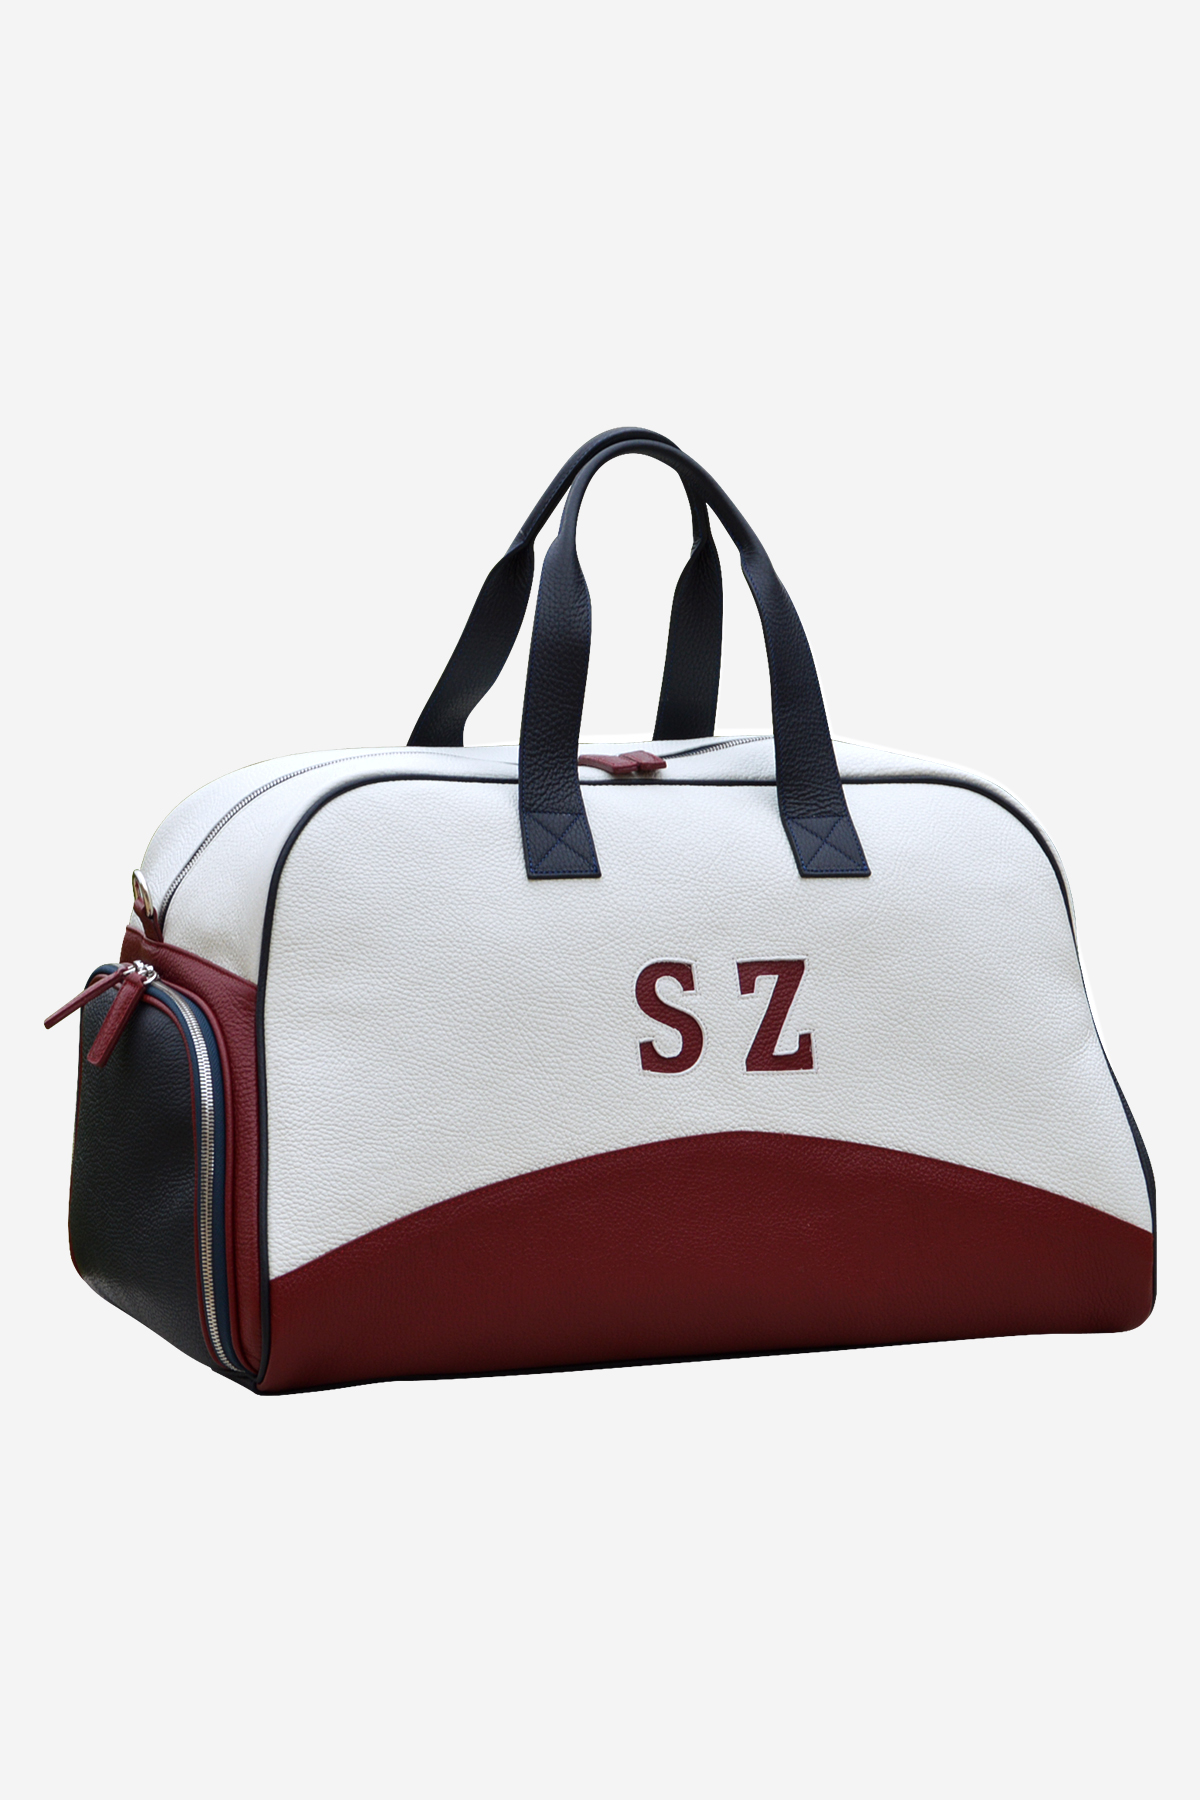 FG438 duffle bag leather sport bag handbag made in italy venezia terrida tennis padel pickleball